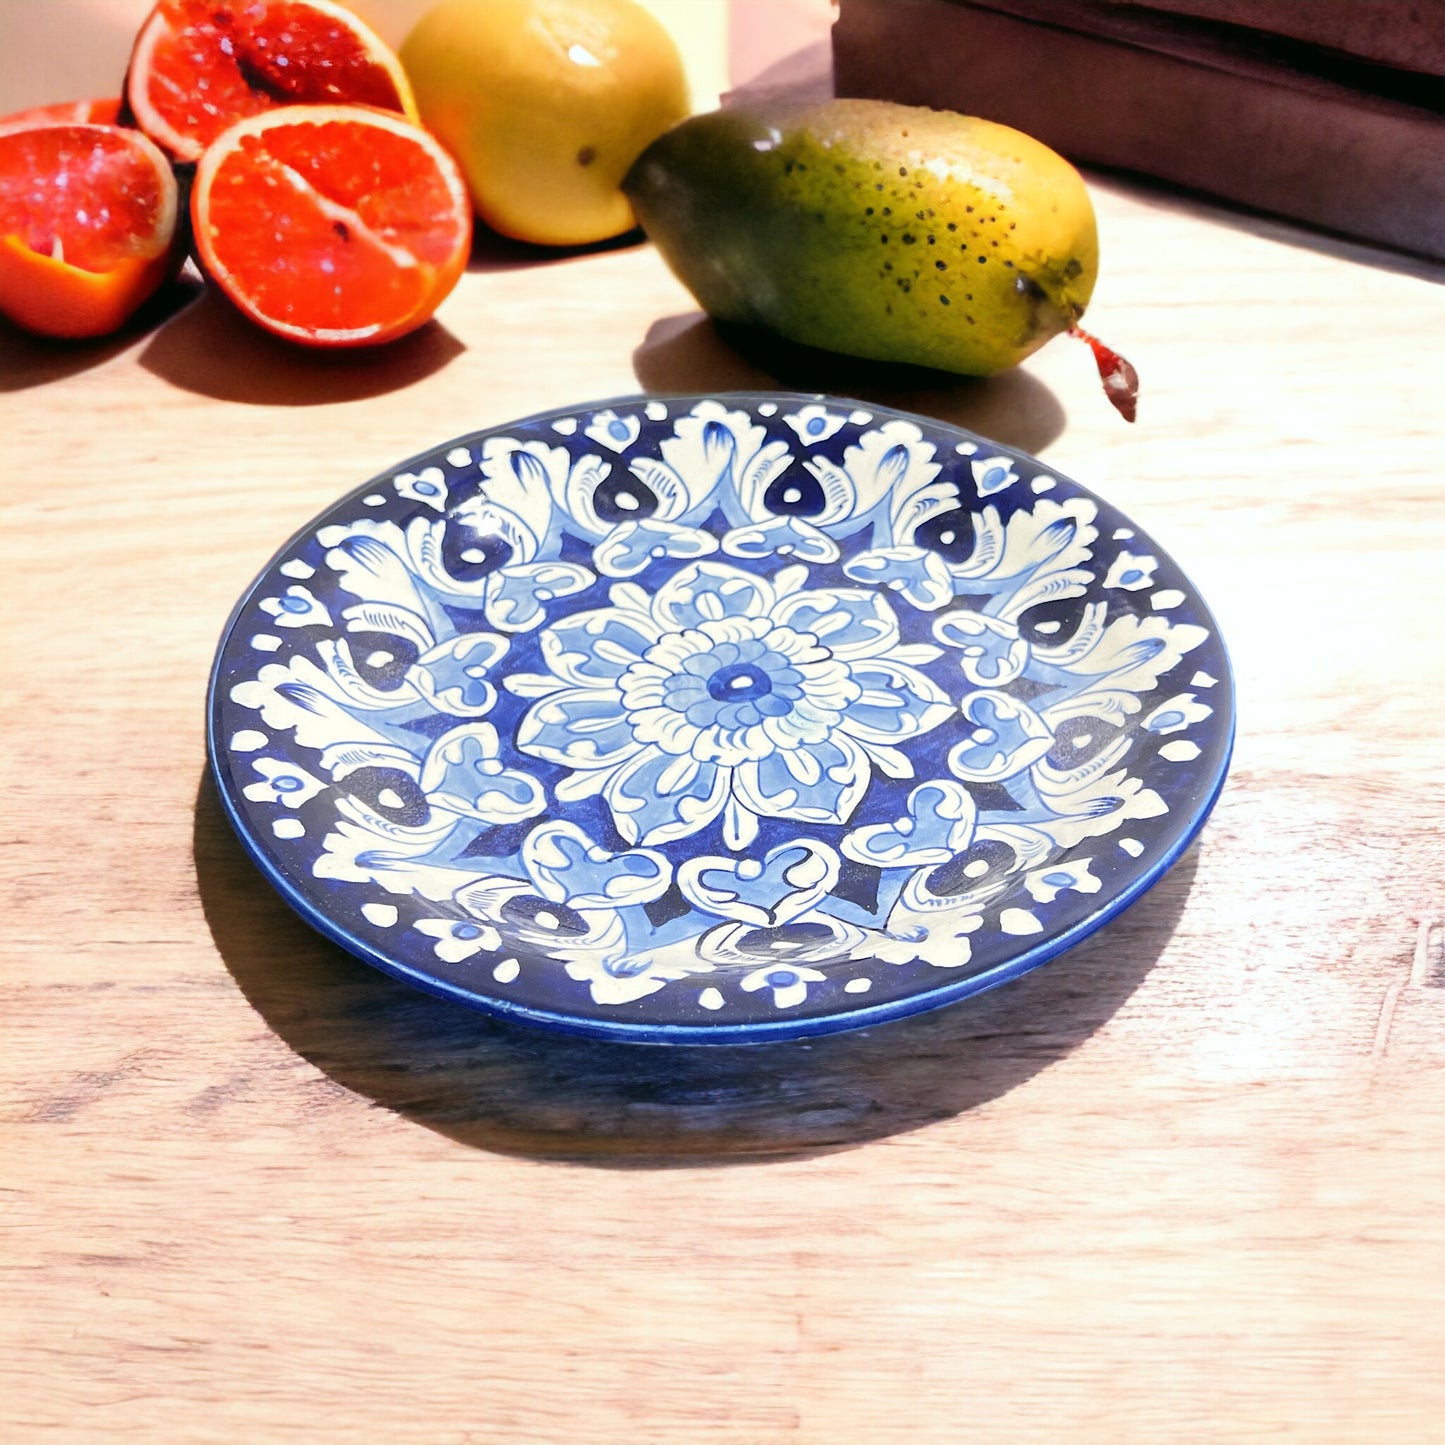 Blue Pottery Ceramic Dinner Plate - Mandala Design